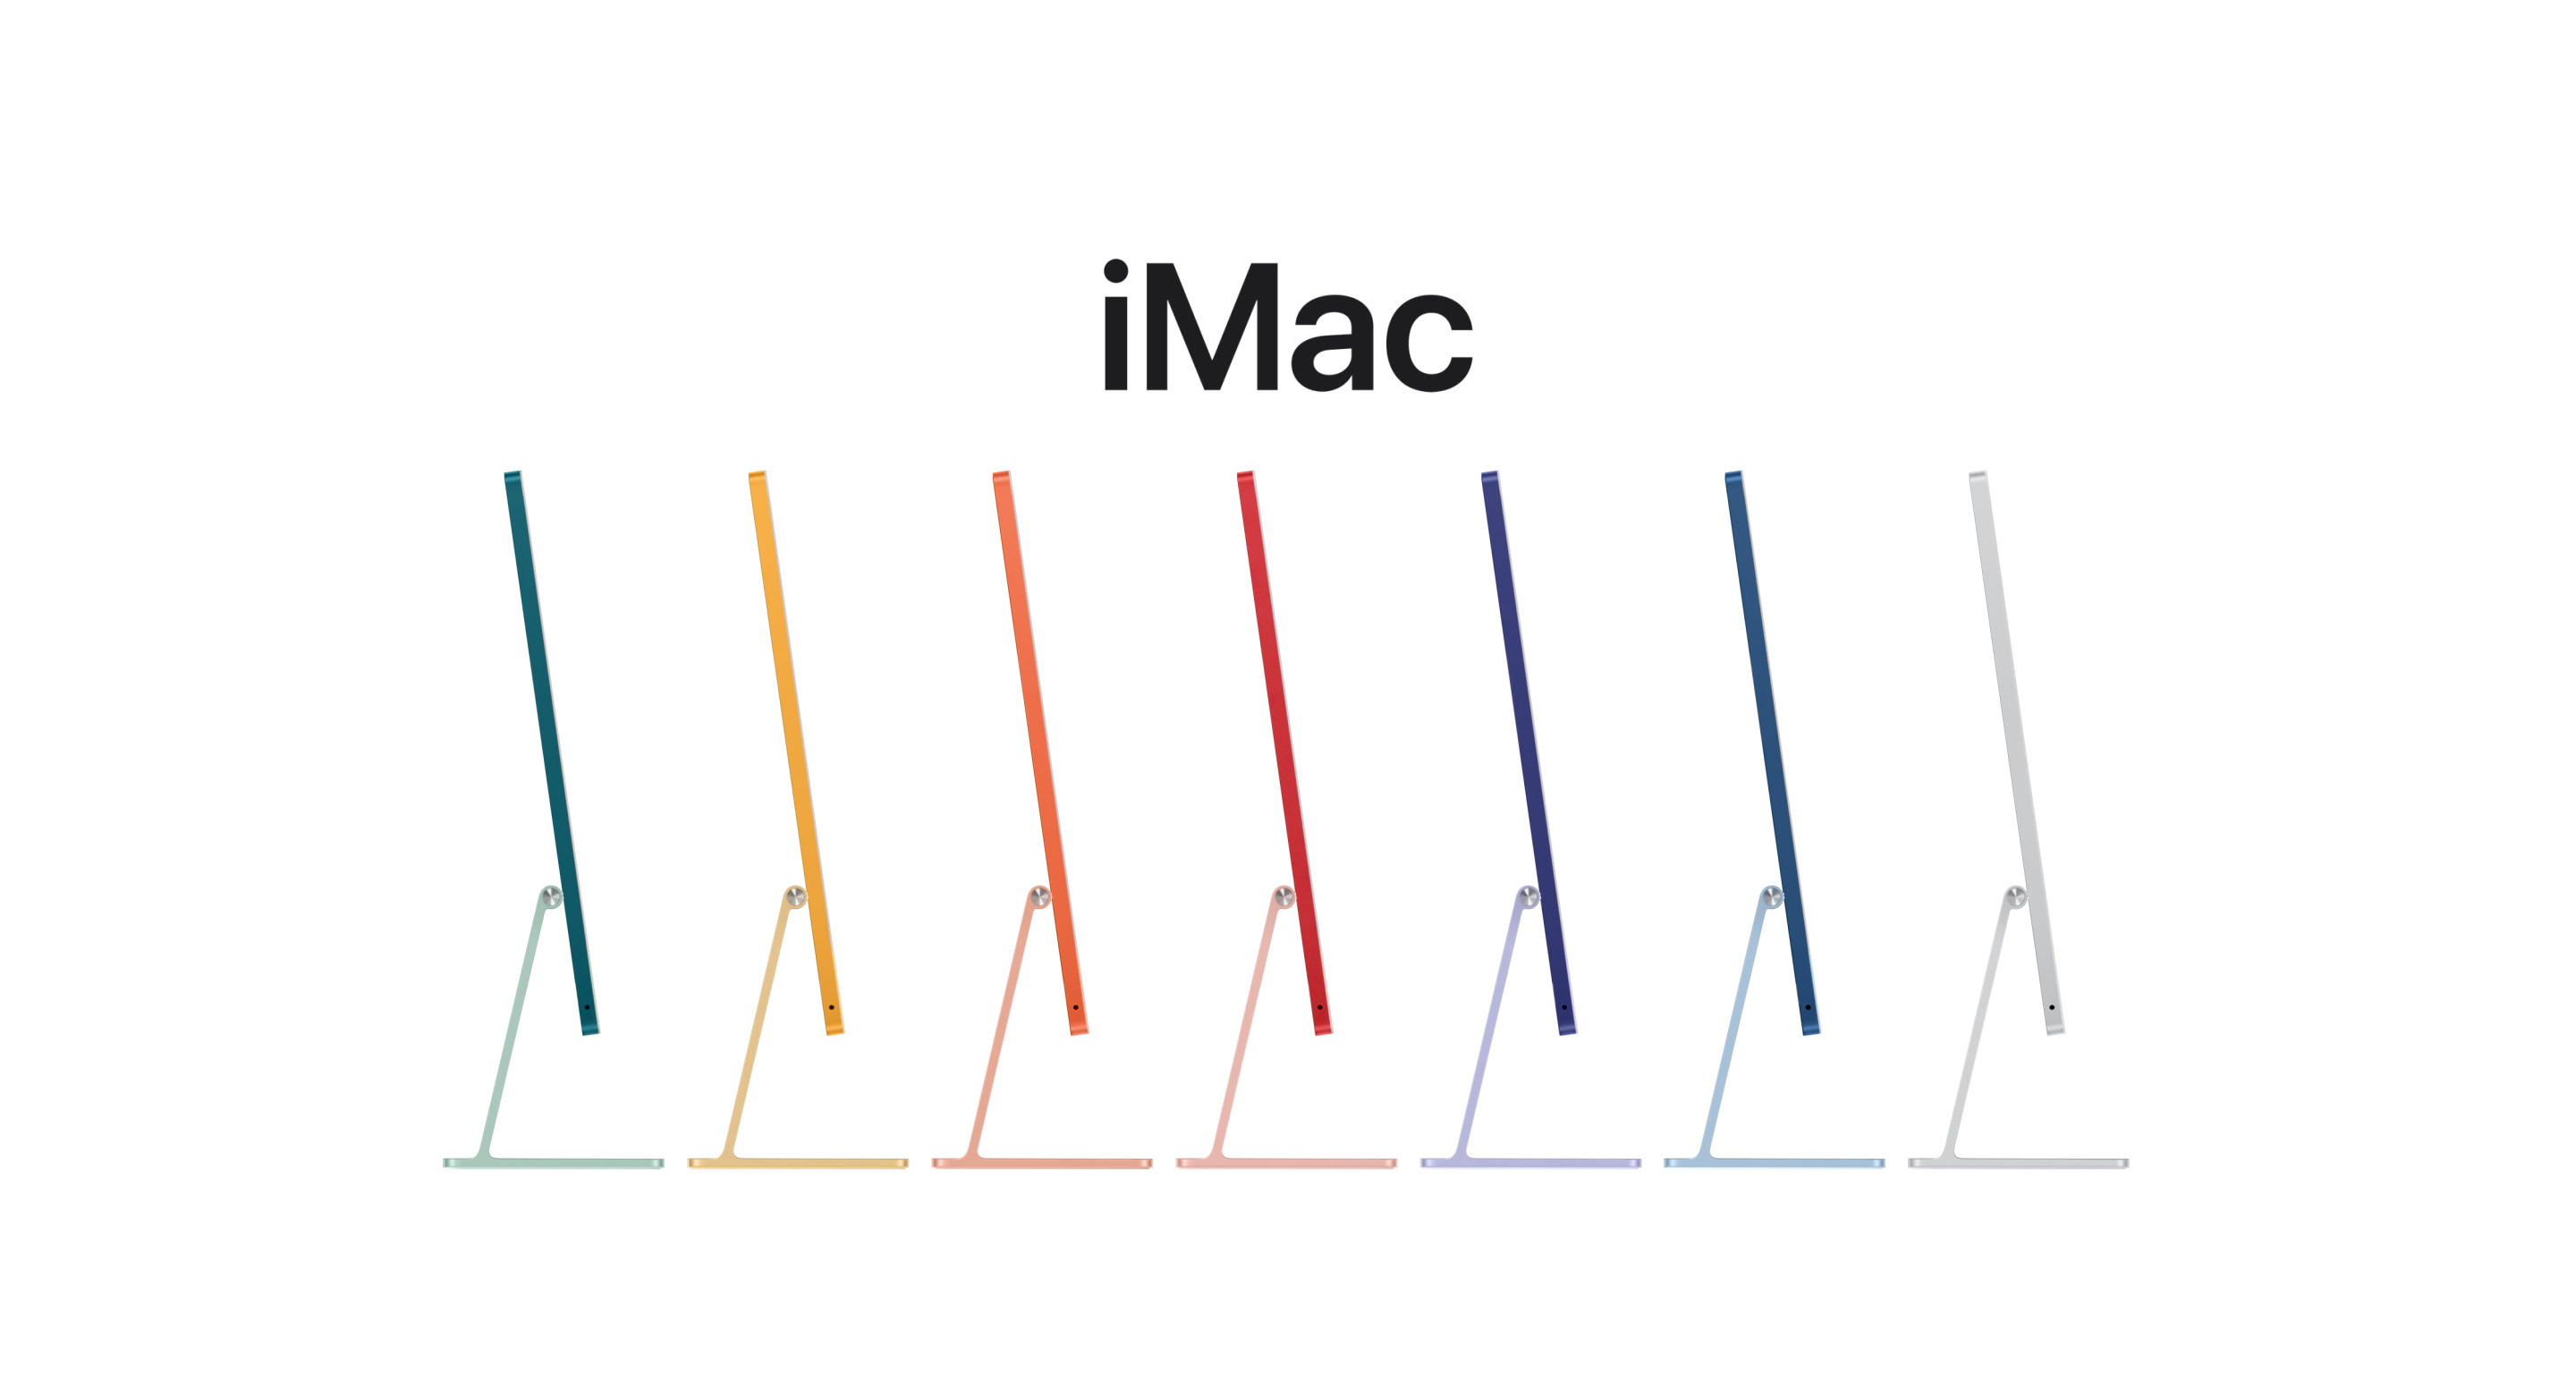 Анимация, на которой показаны iMac всех семи цветов